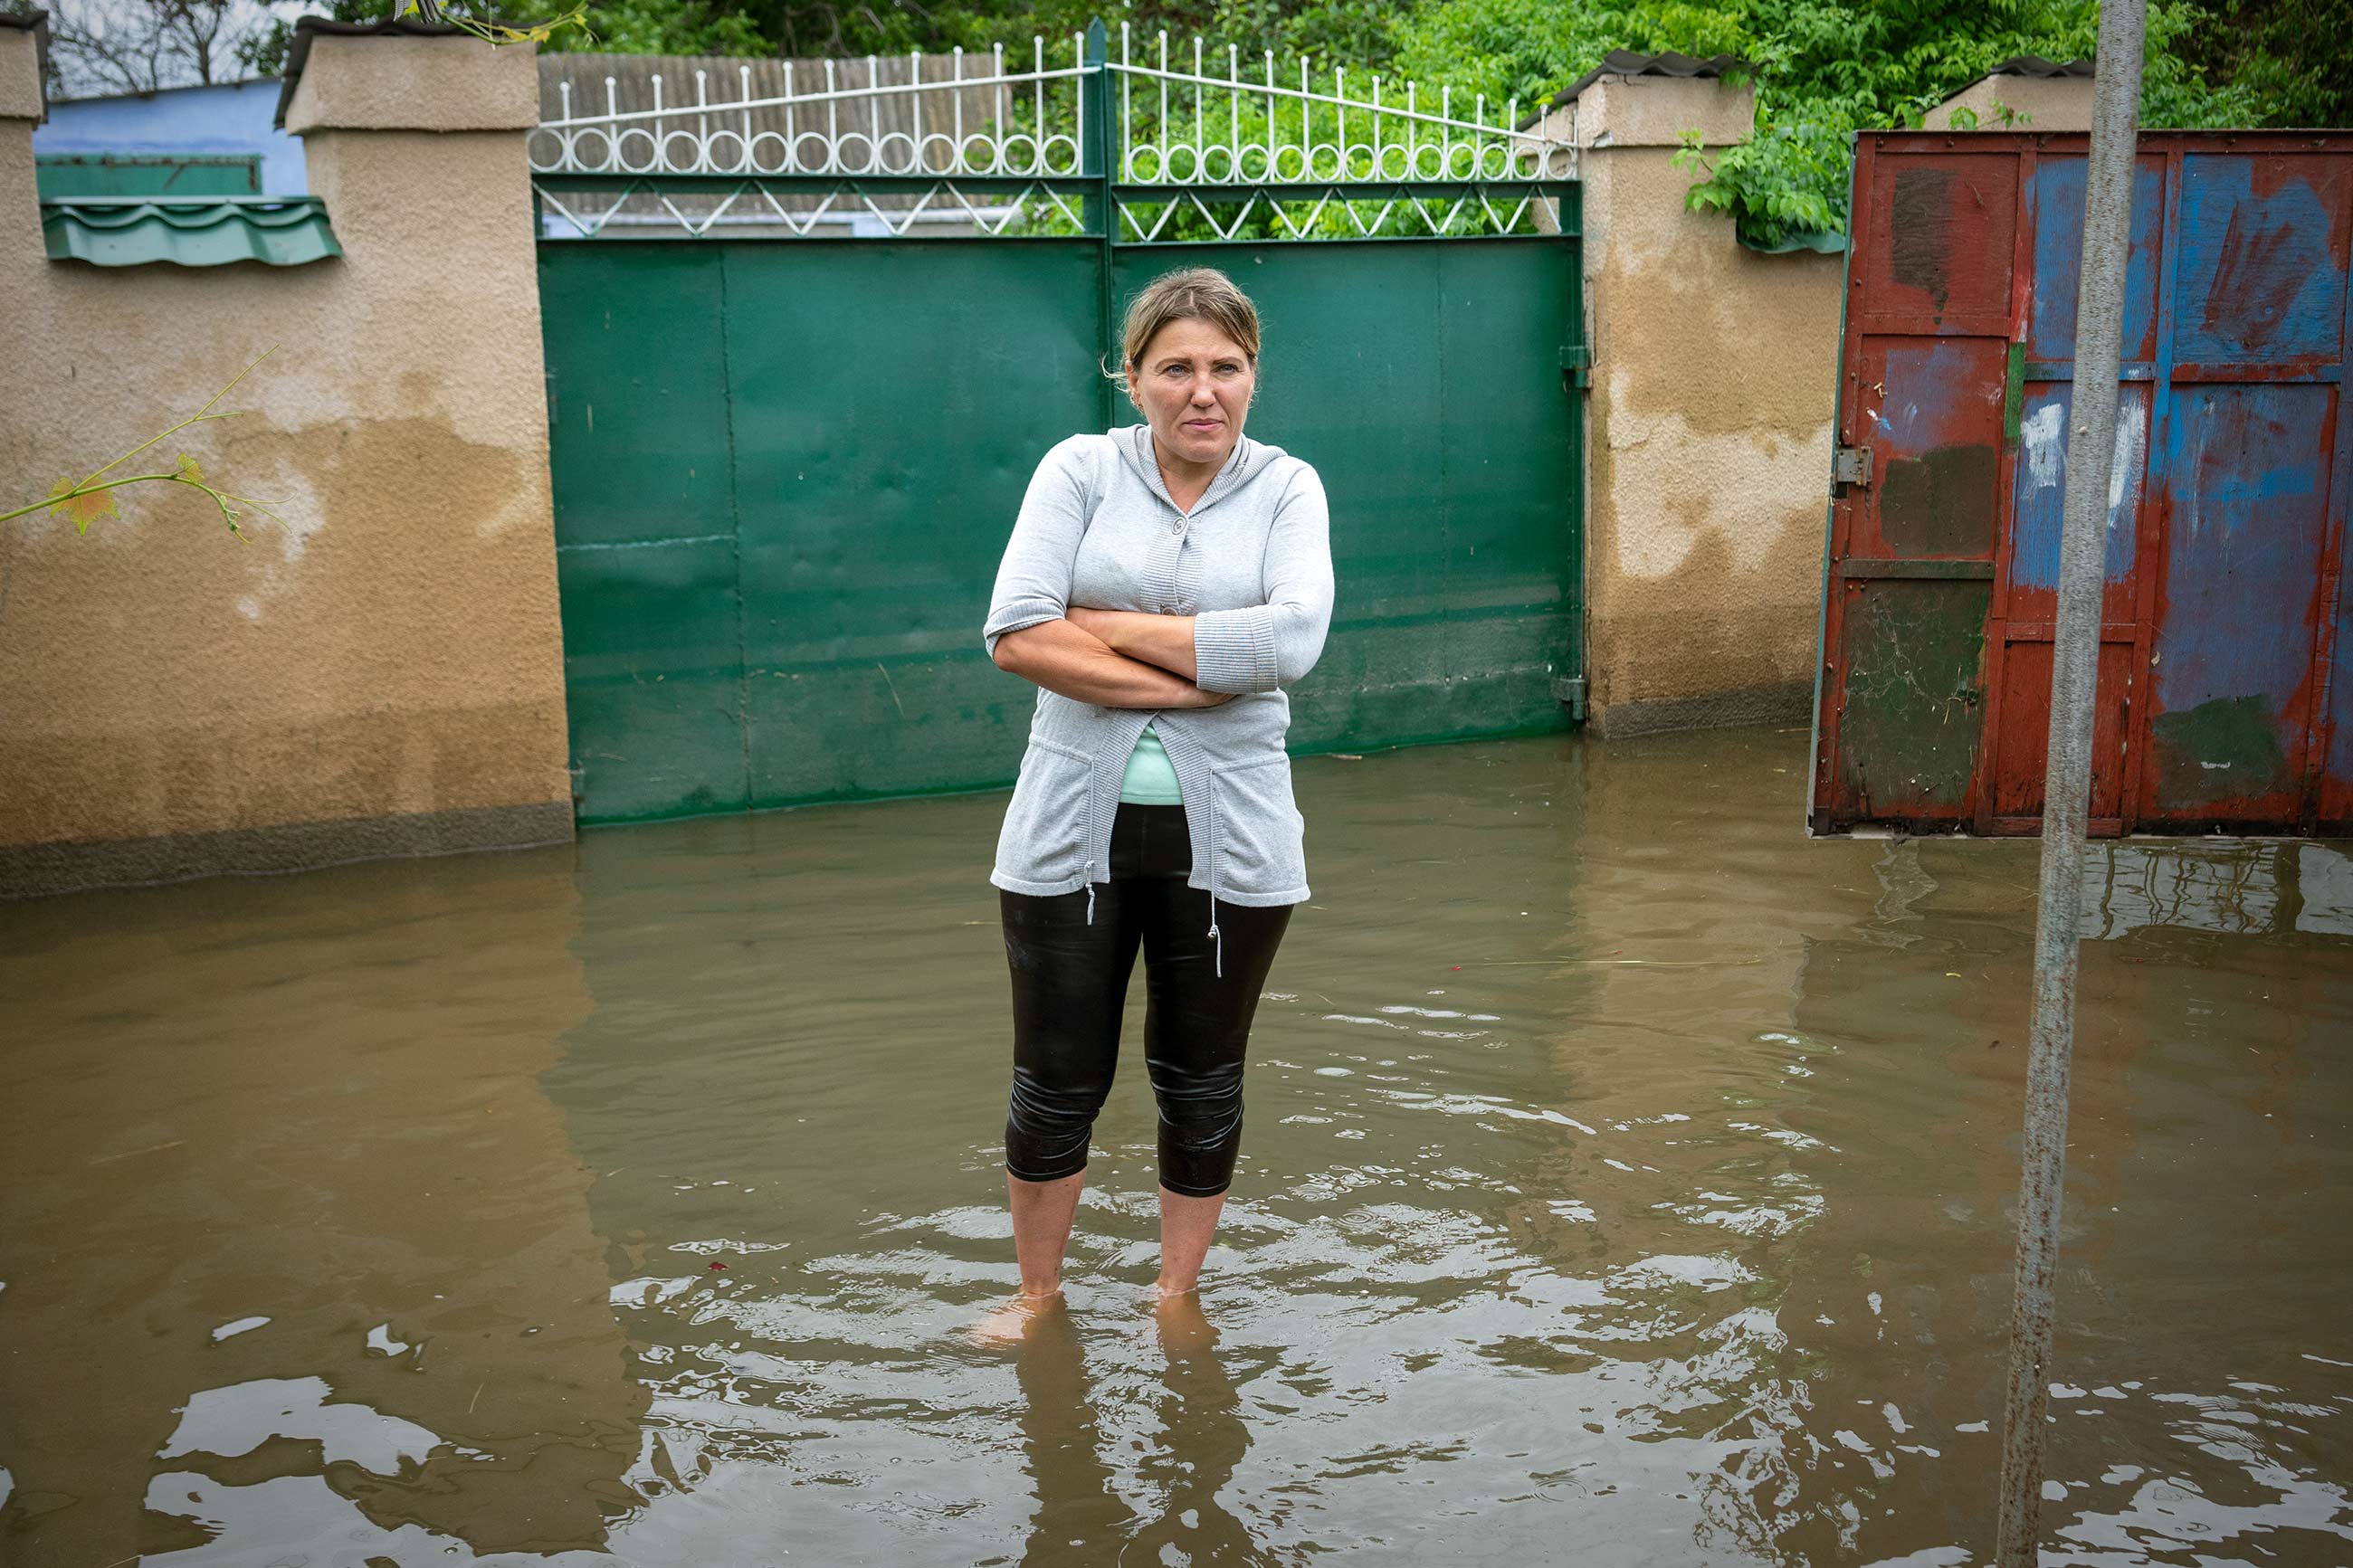 Після підриву ГЕС затопило не тільки Херсонщину, а й Миколаївщину. Катерина Сергацкова відвідала затоплені села і побувала на похороні одного з перших загиблих. Ось її репортаж